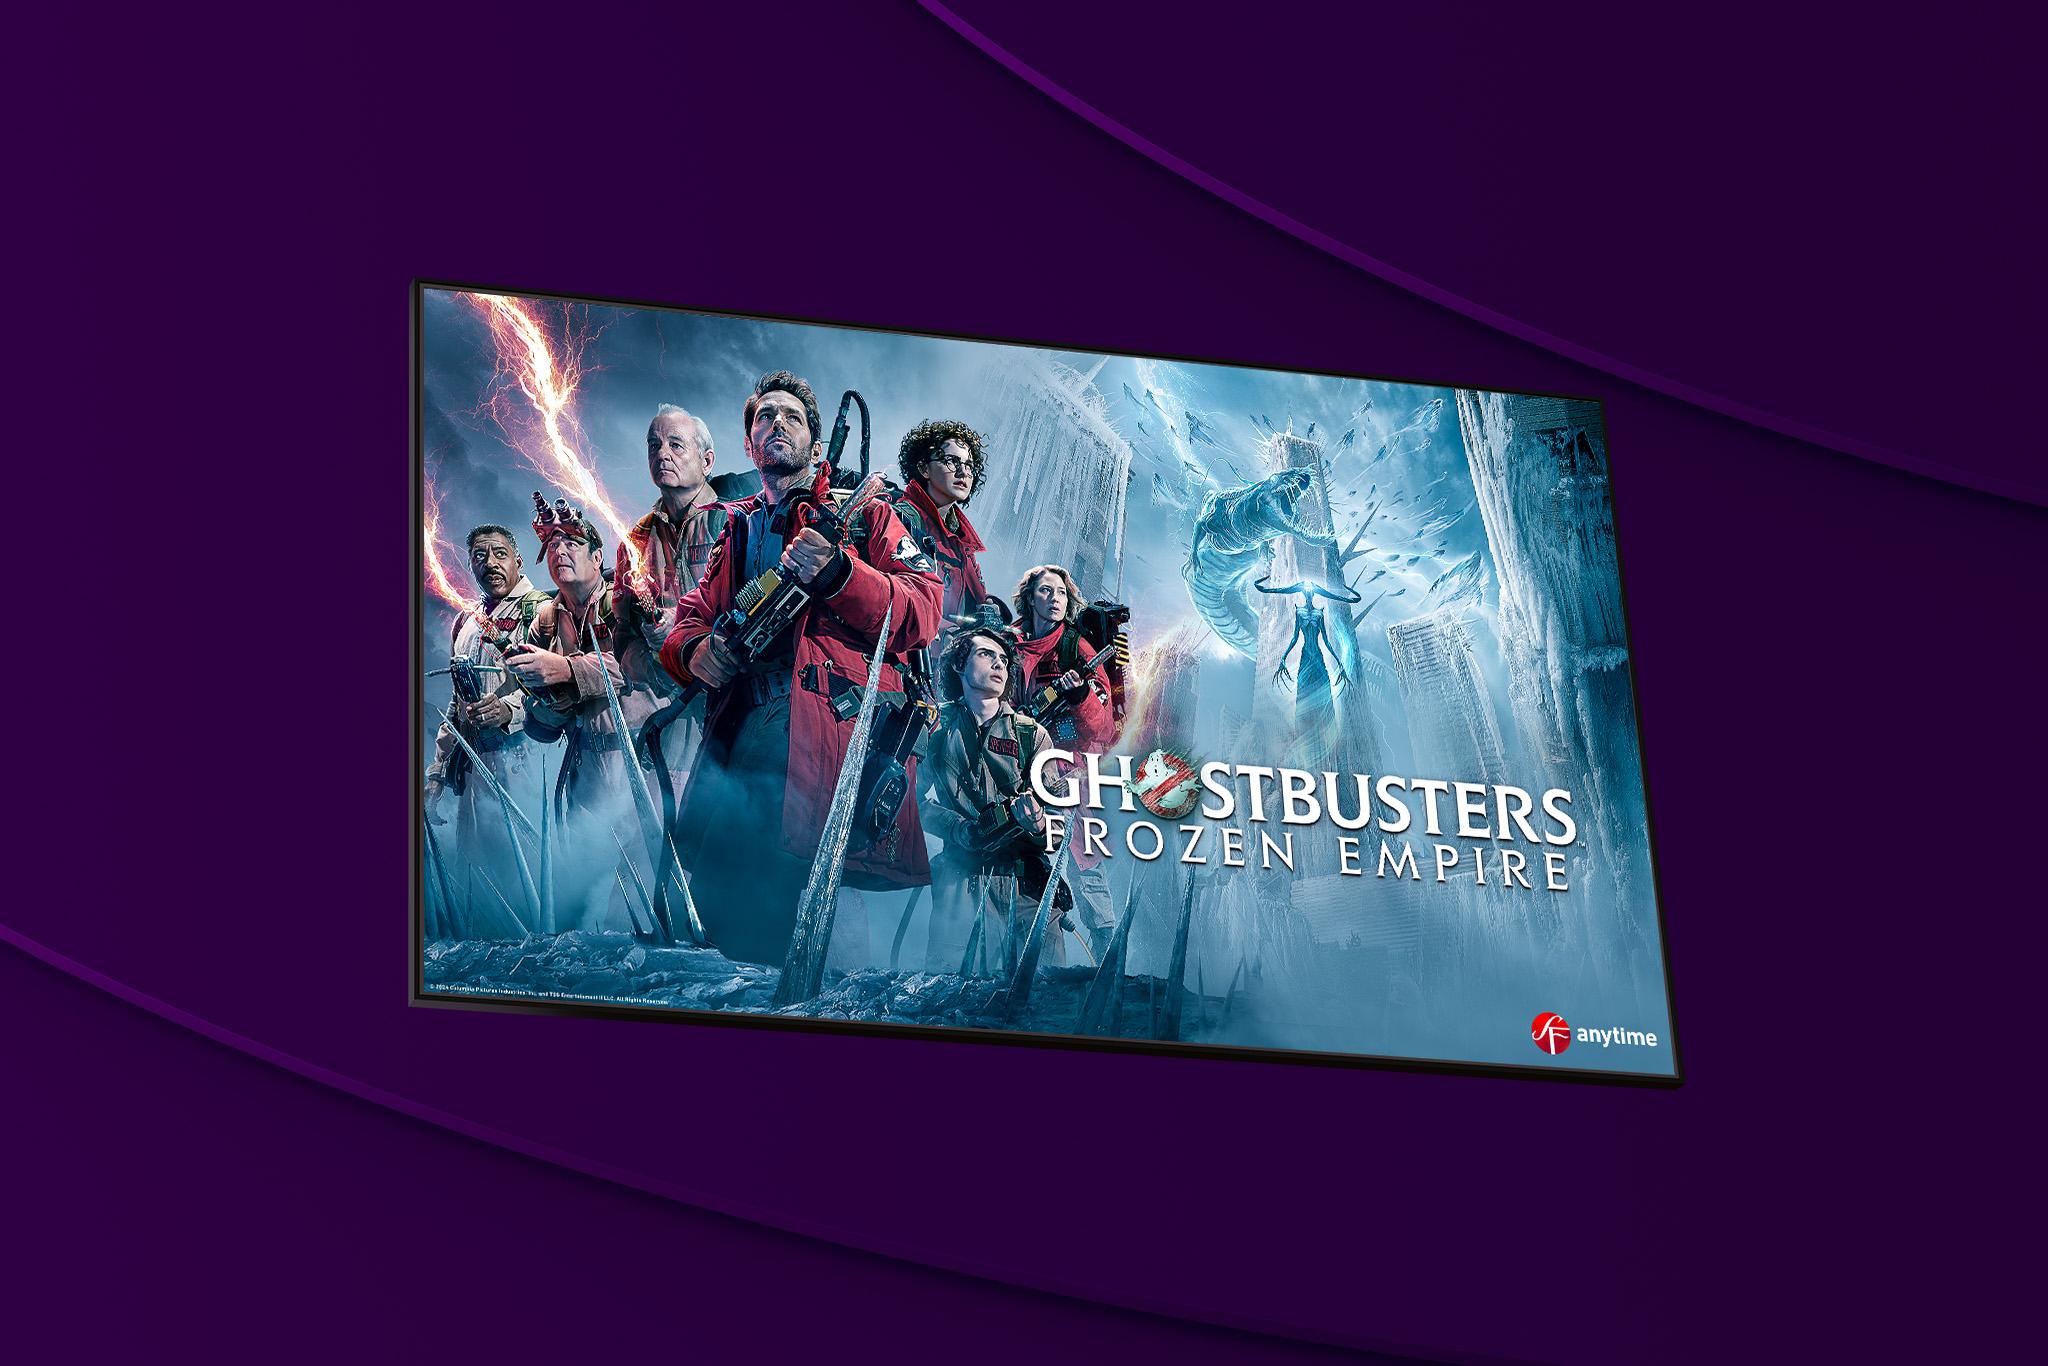 Se Ghostbusters - Frozen Emire via Filmbutiken i sommar.